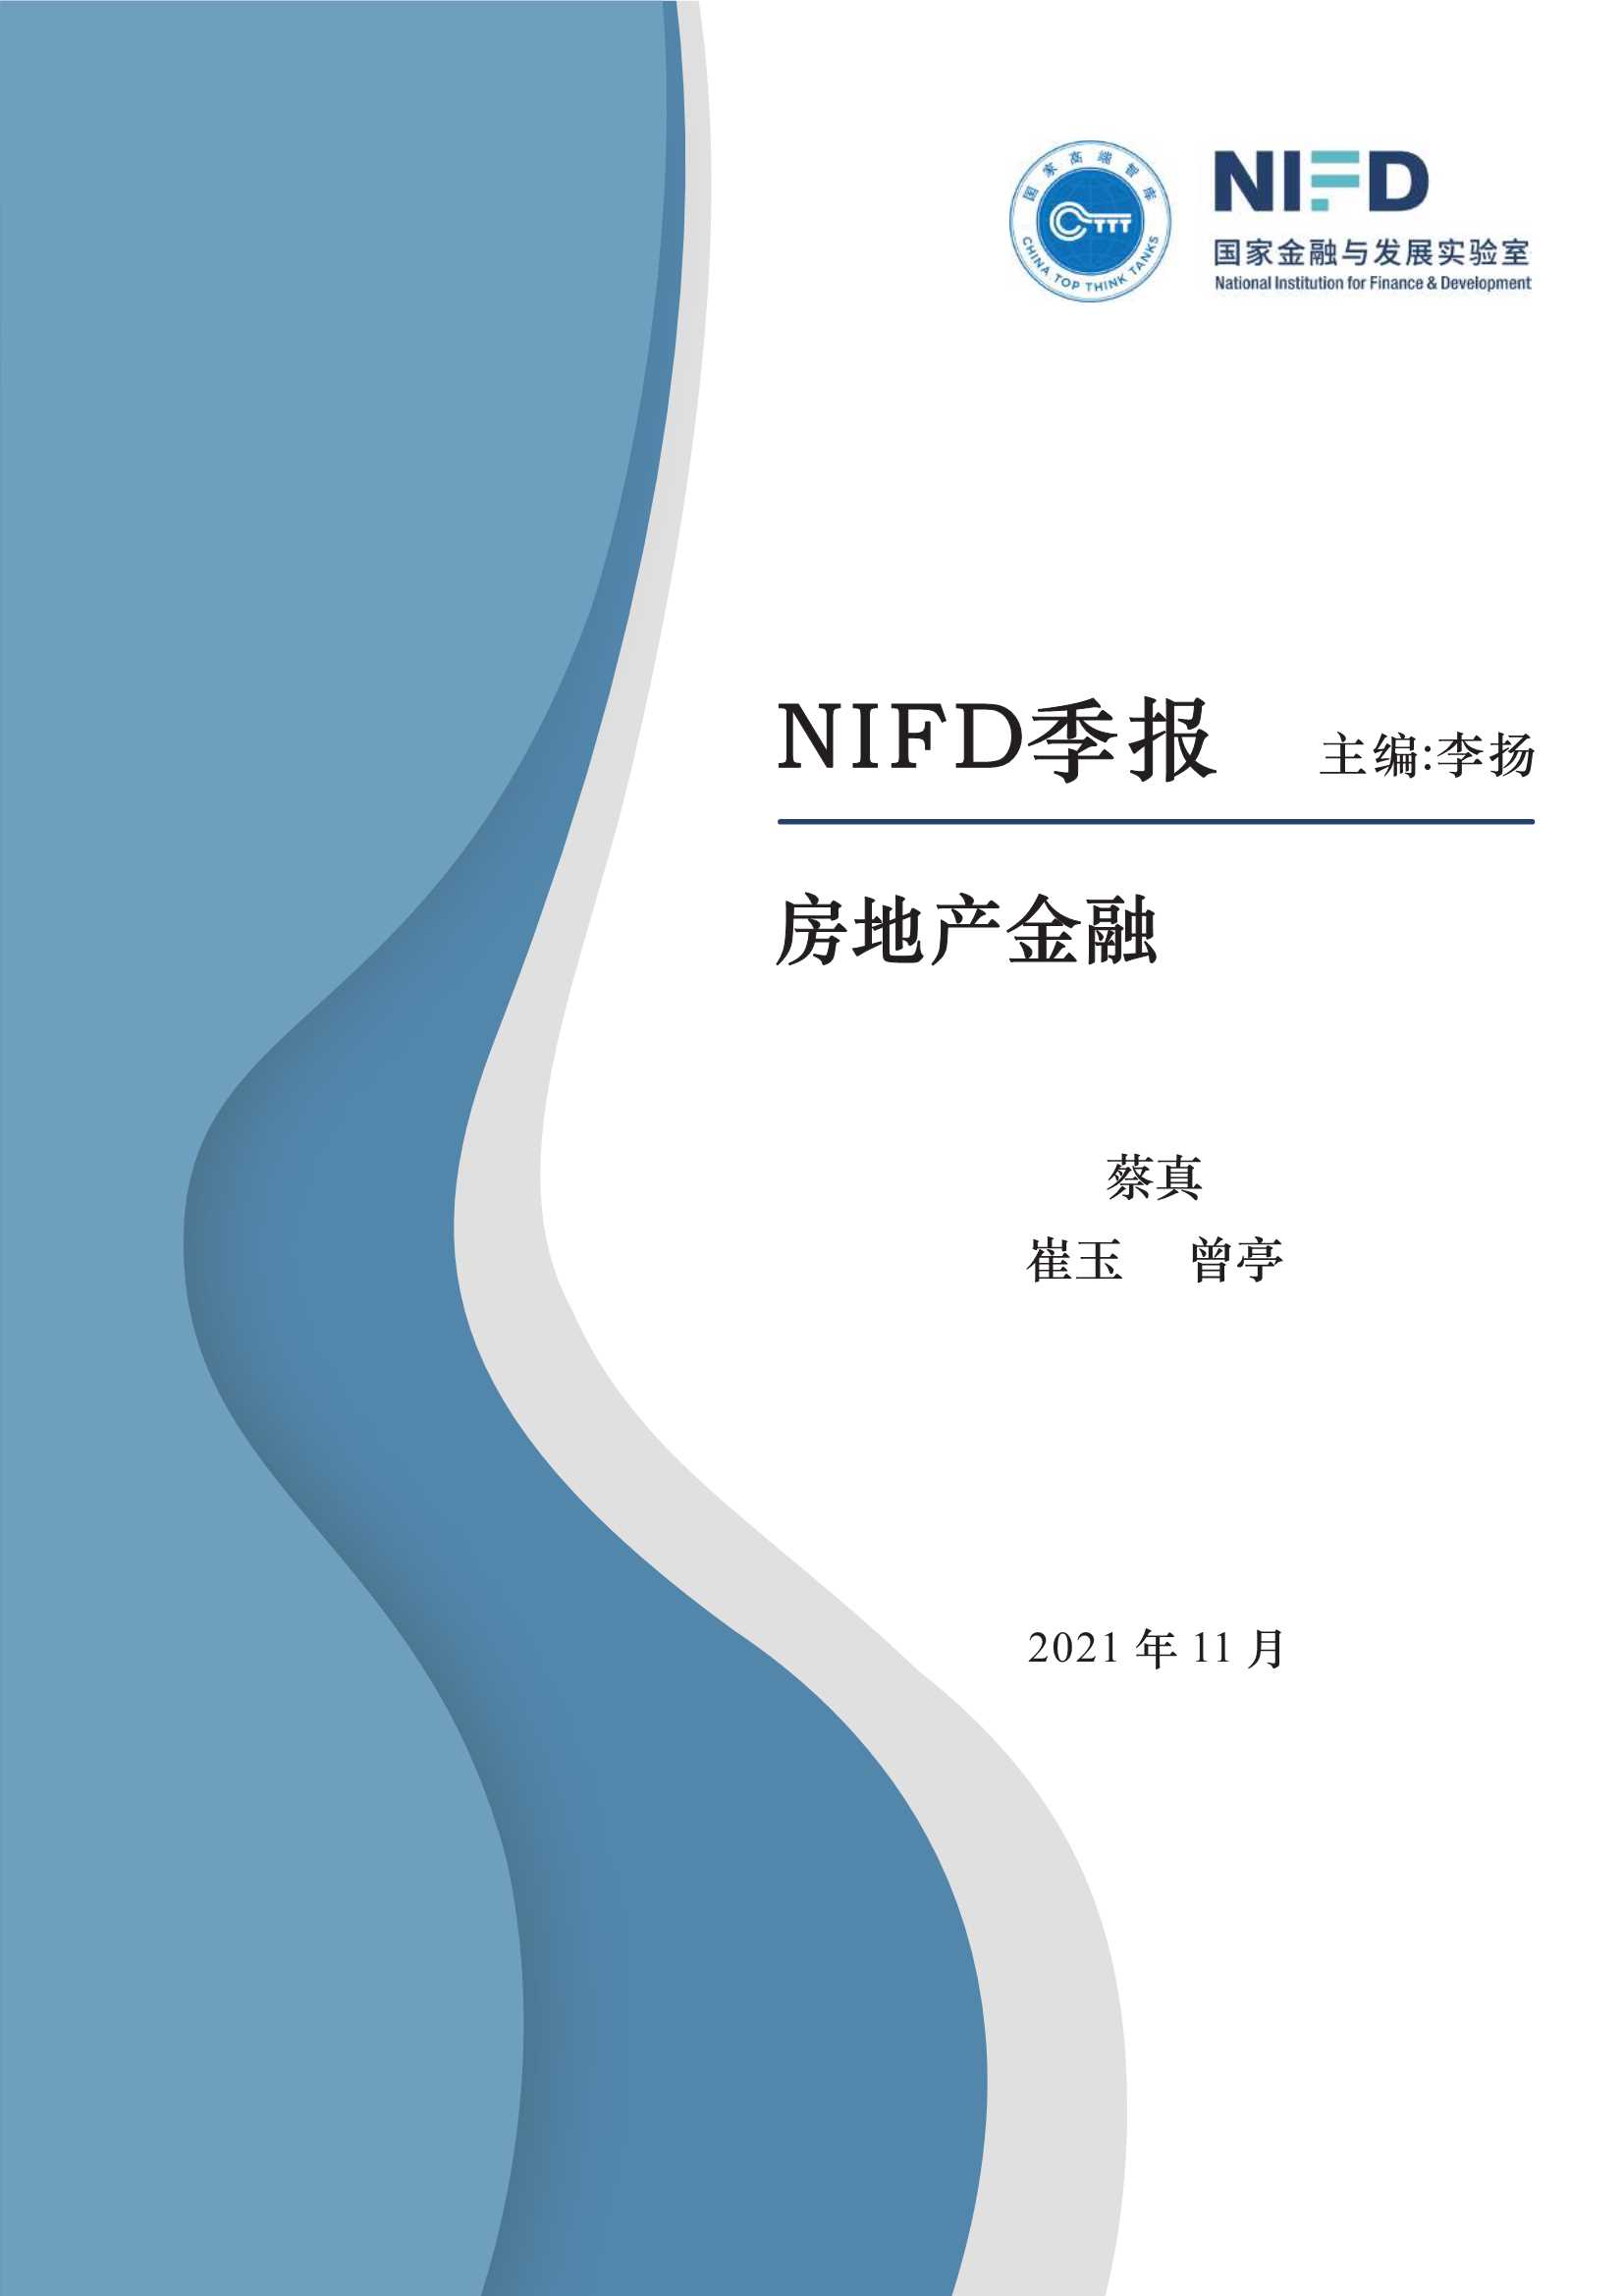 NIFD-2021Q3房地产金融-2021.11-21页